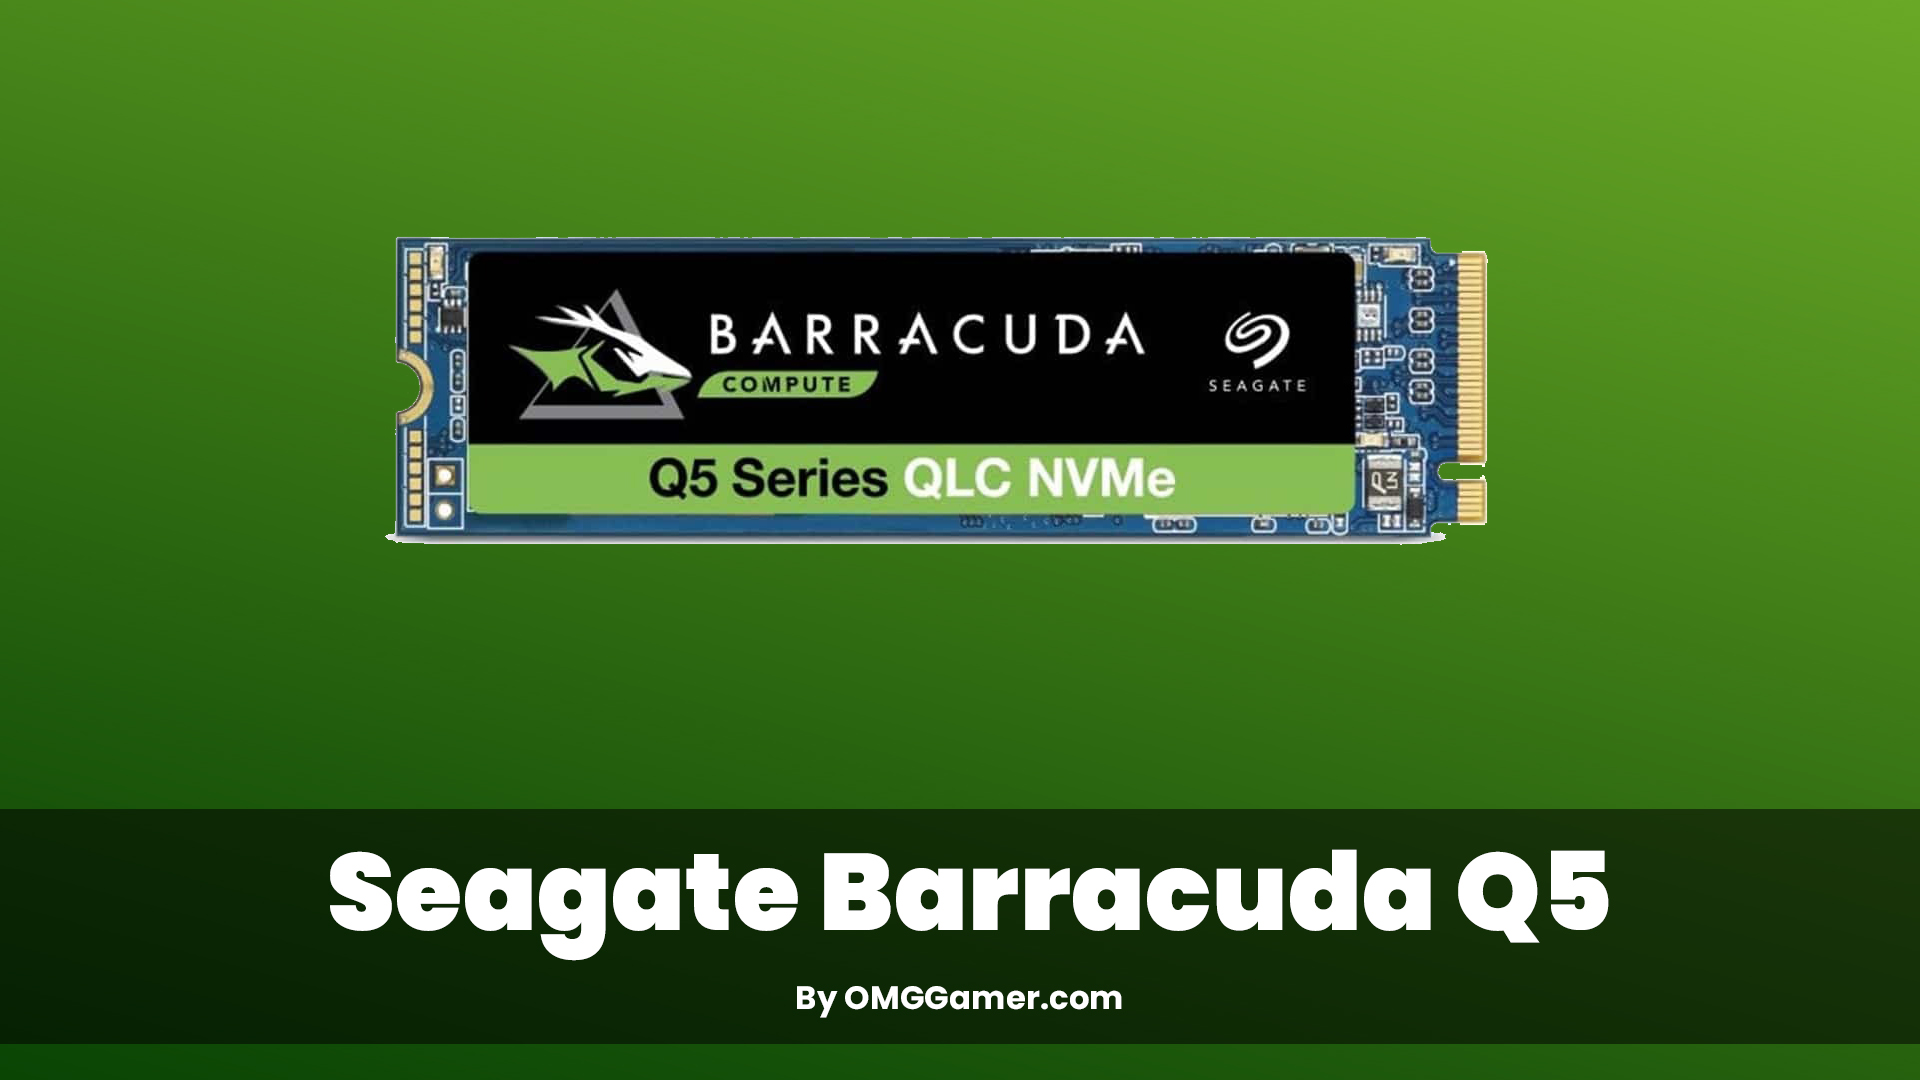 Seagate Barracuda Q5